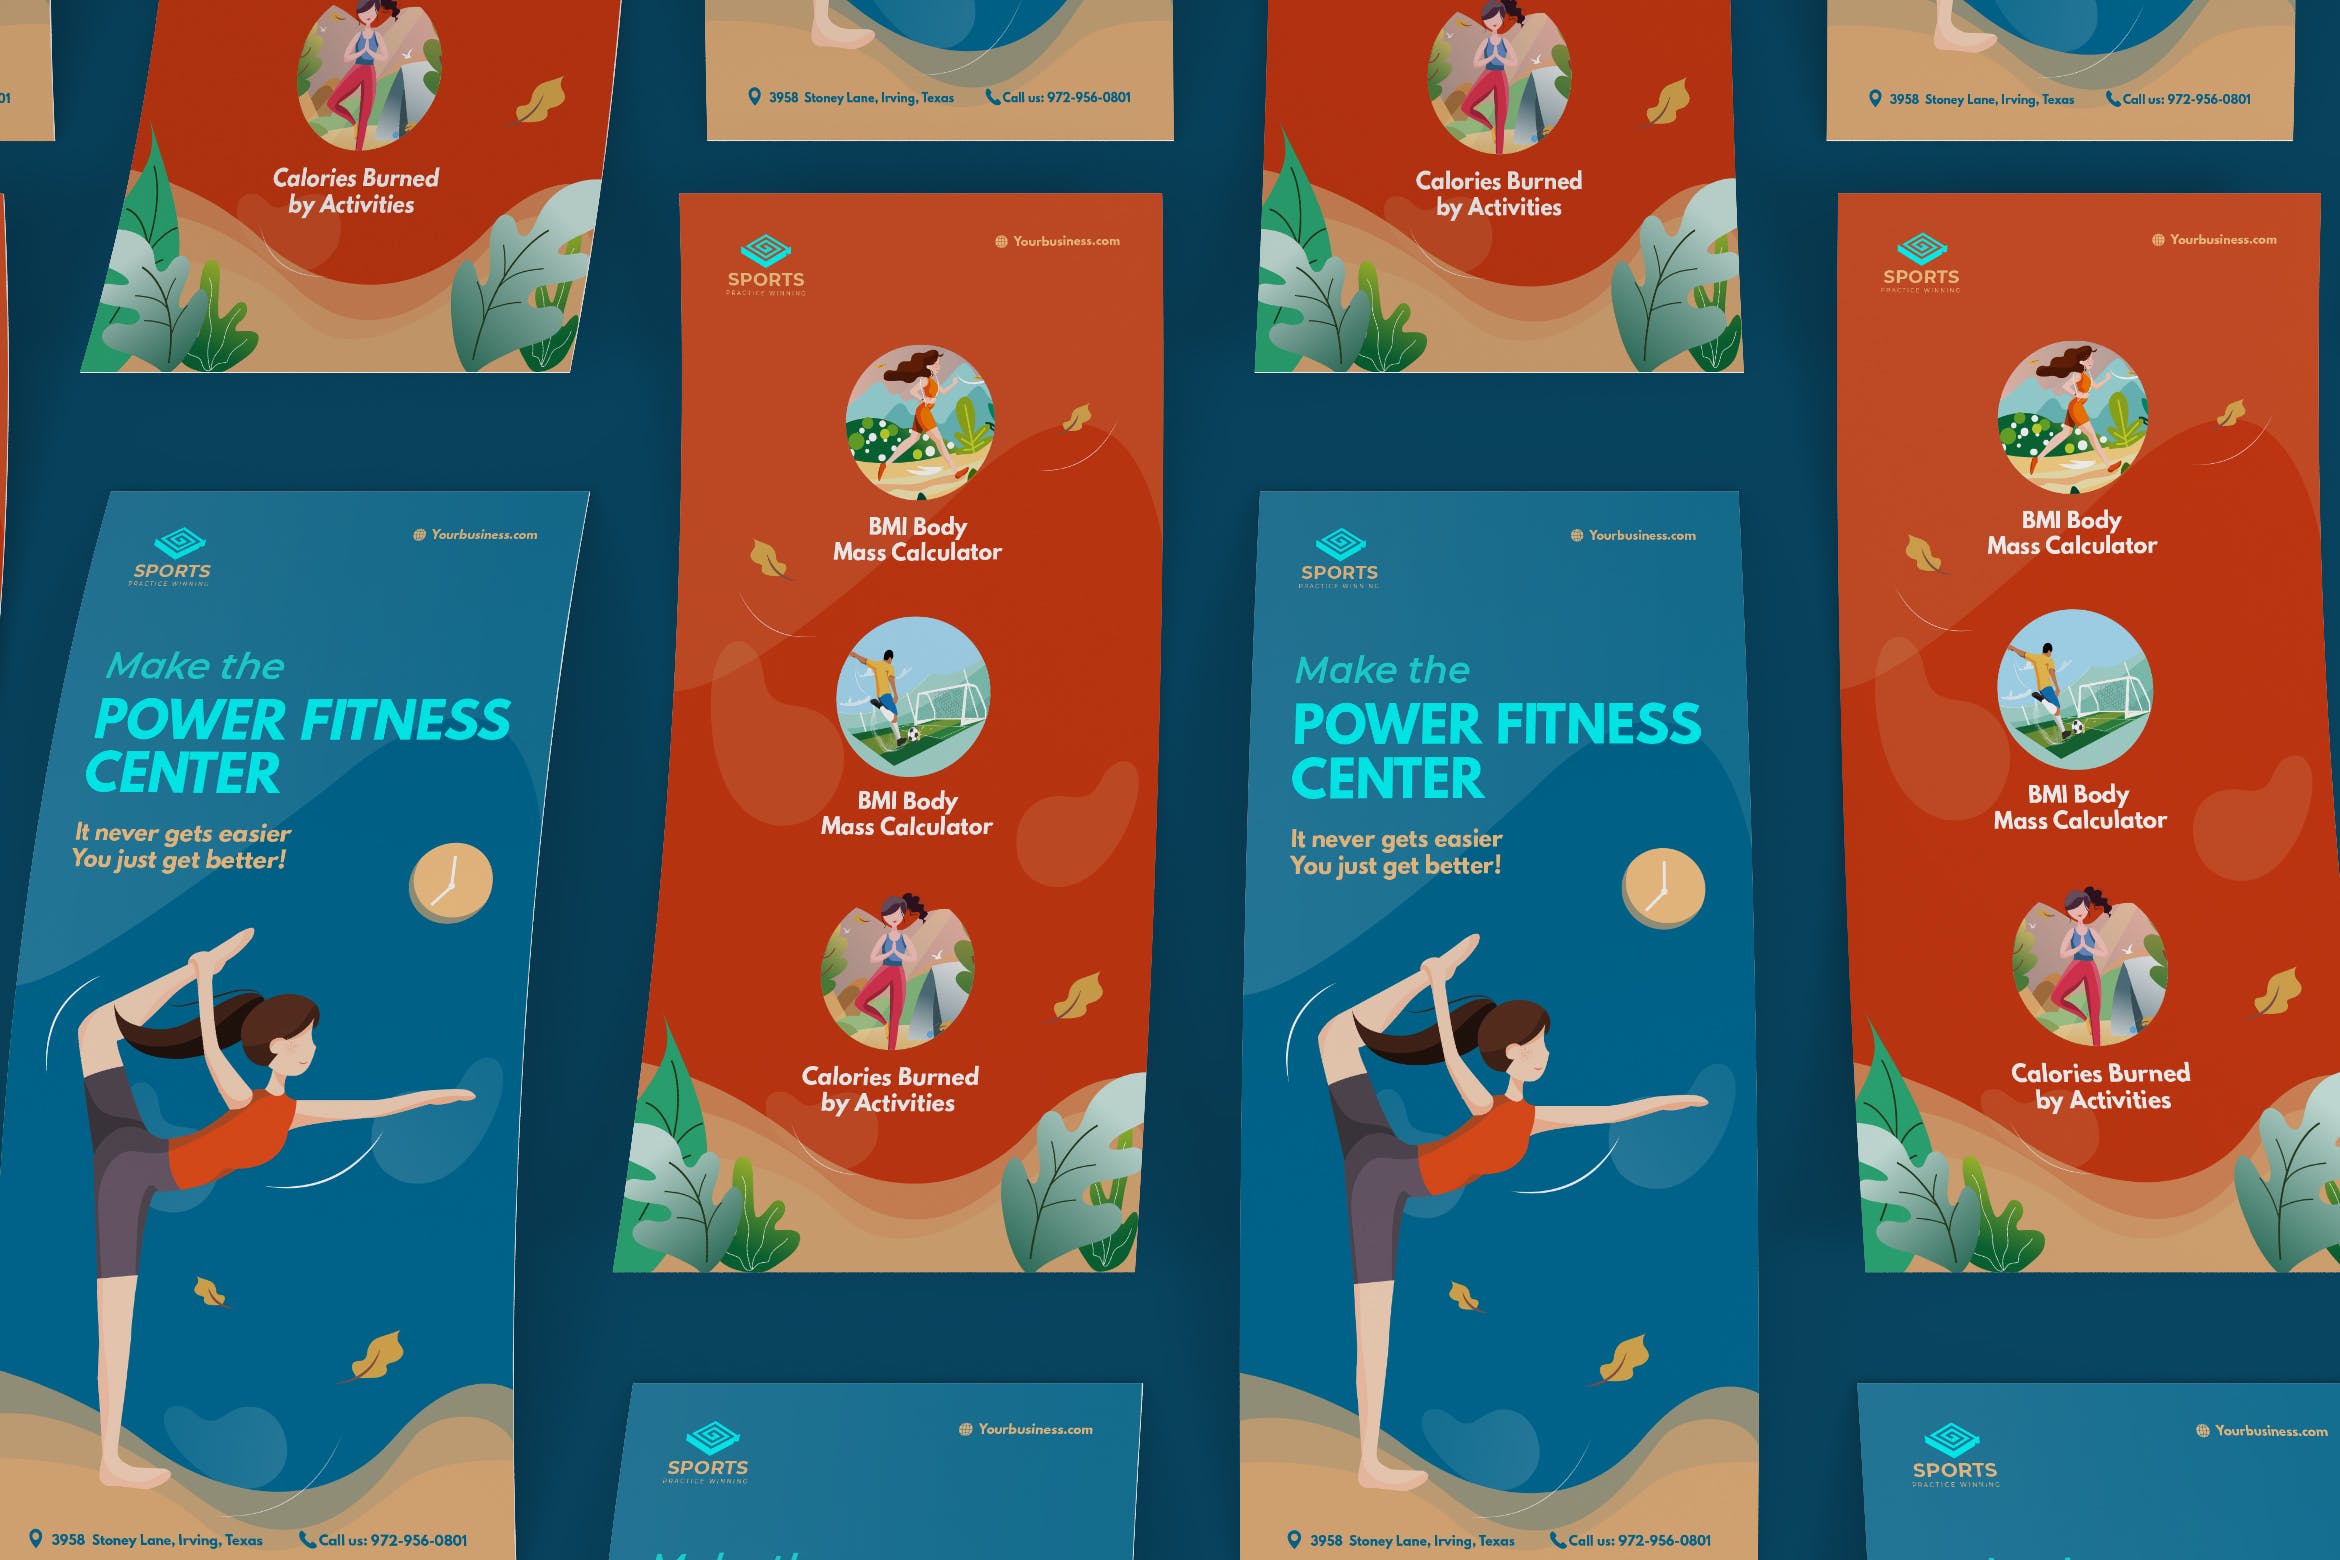 体育/瑜伽/健身运动培训机构宣传单张设计模板 Sport Activities DL Rackcard Illustration Template插图